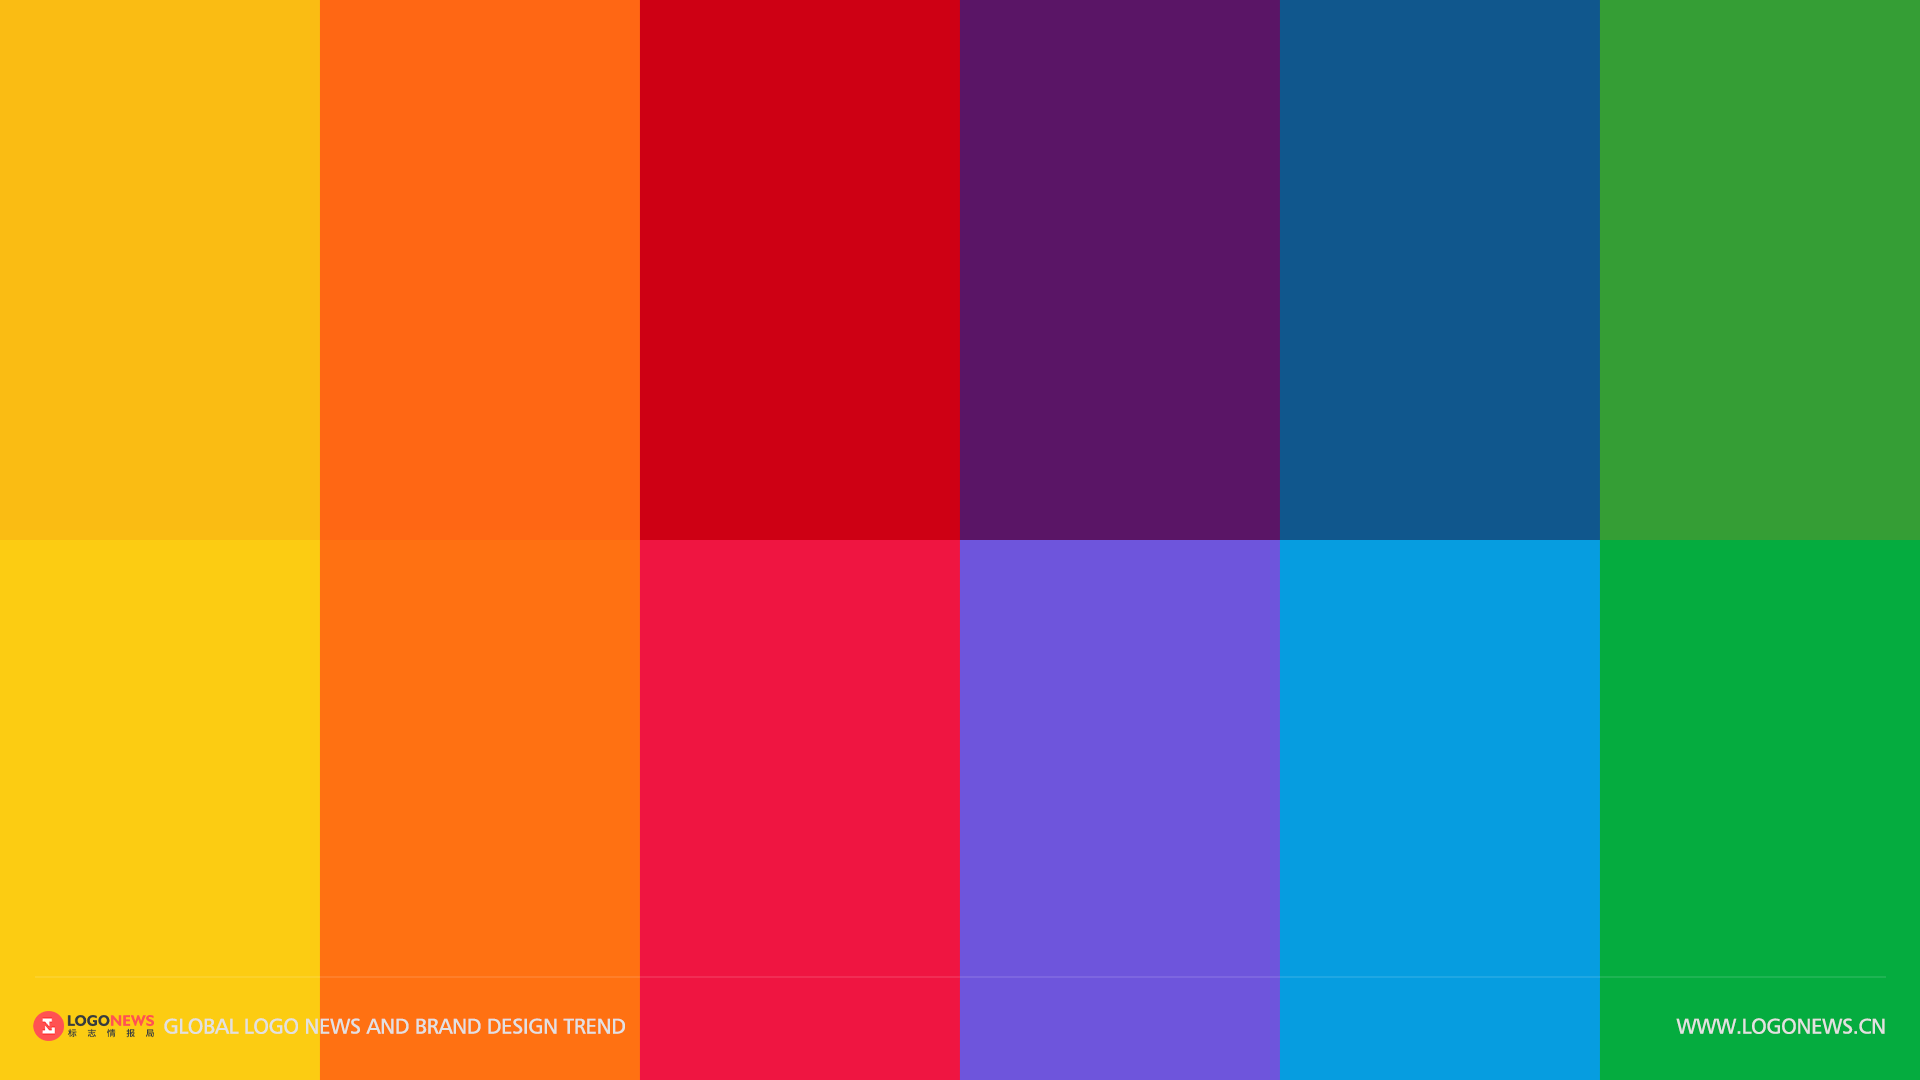 美國國家廣播公司NBC 更新彩色孔雀LOGO，賦予更鮮豔明亮的色彩 5